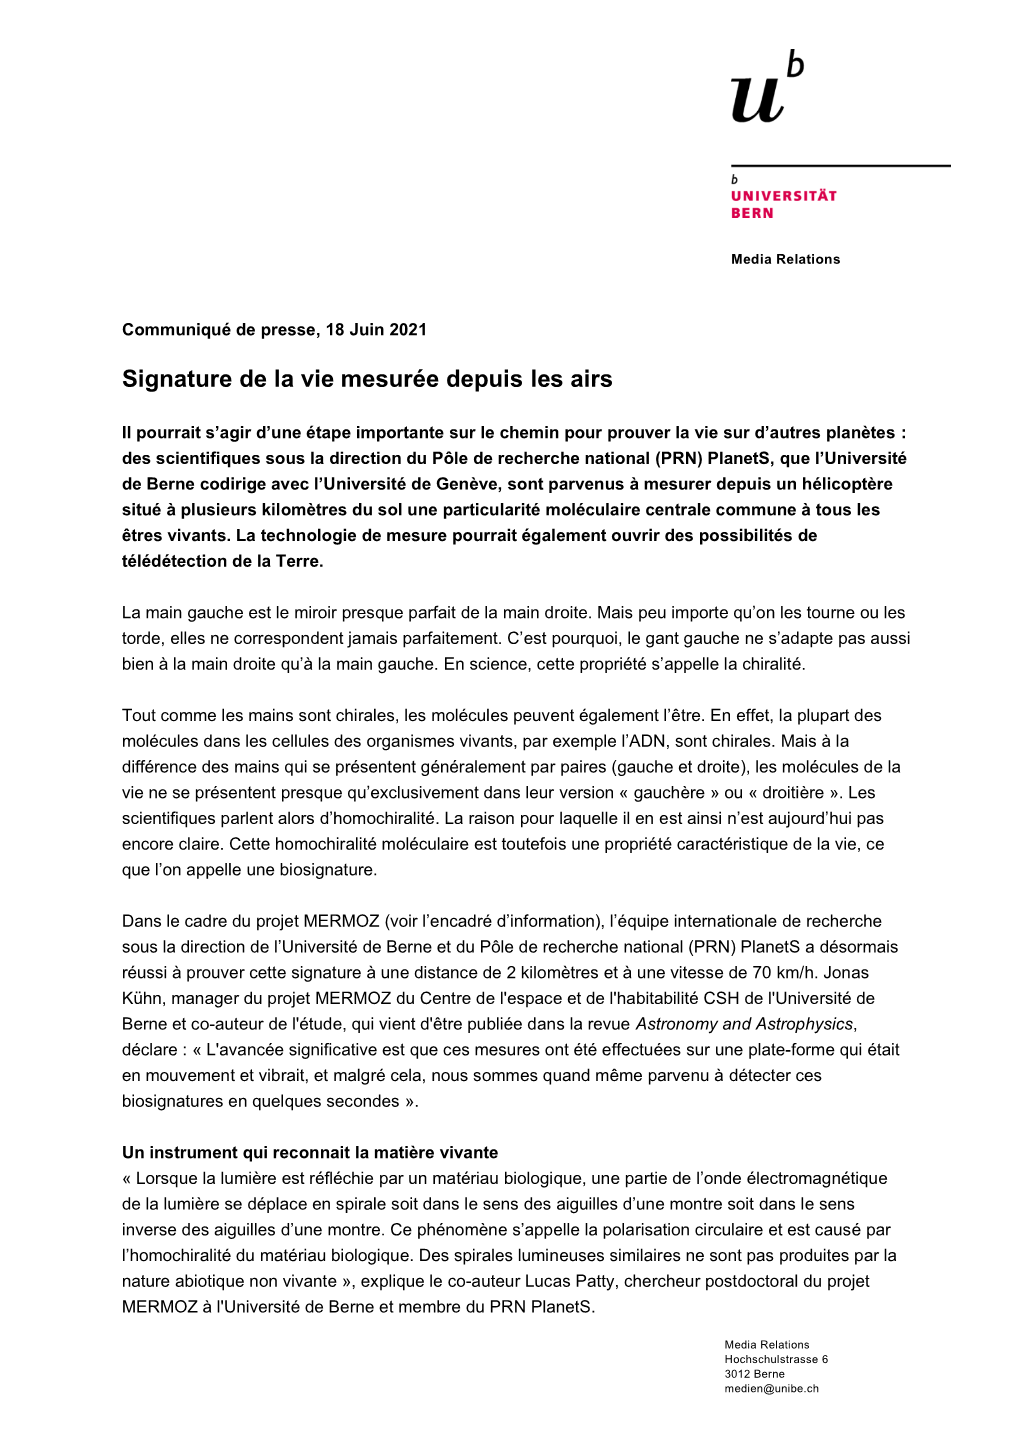 Communiqué De Presse Unibe (PDF, 148KB)